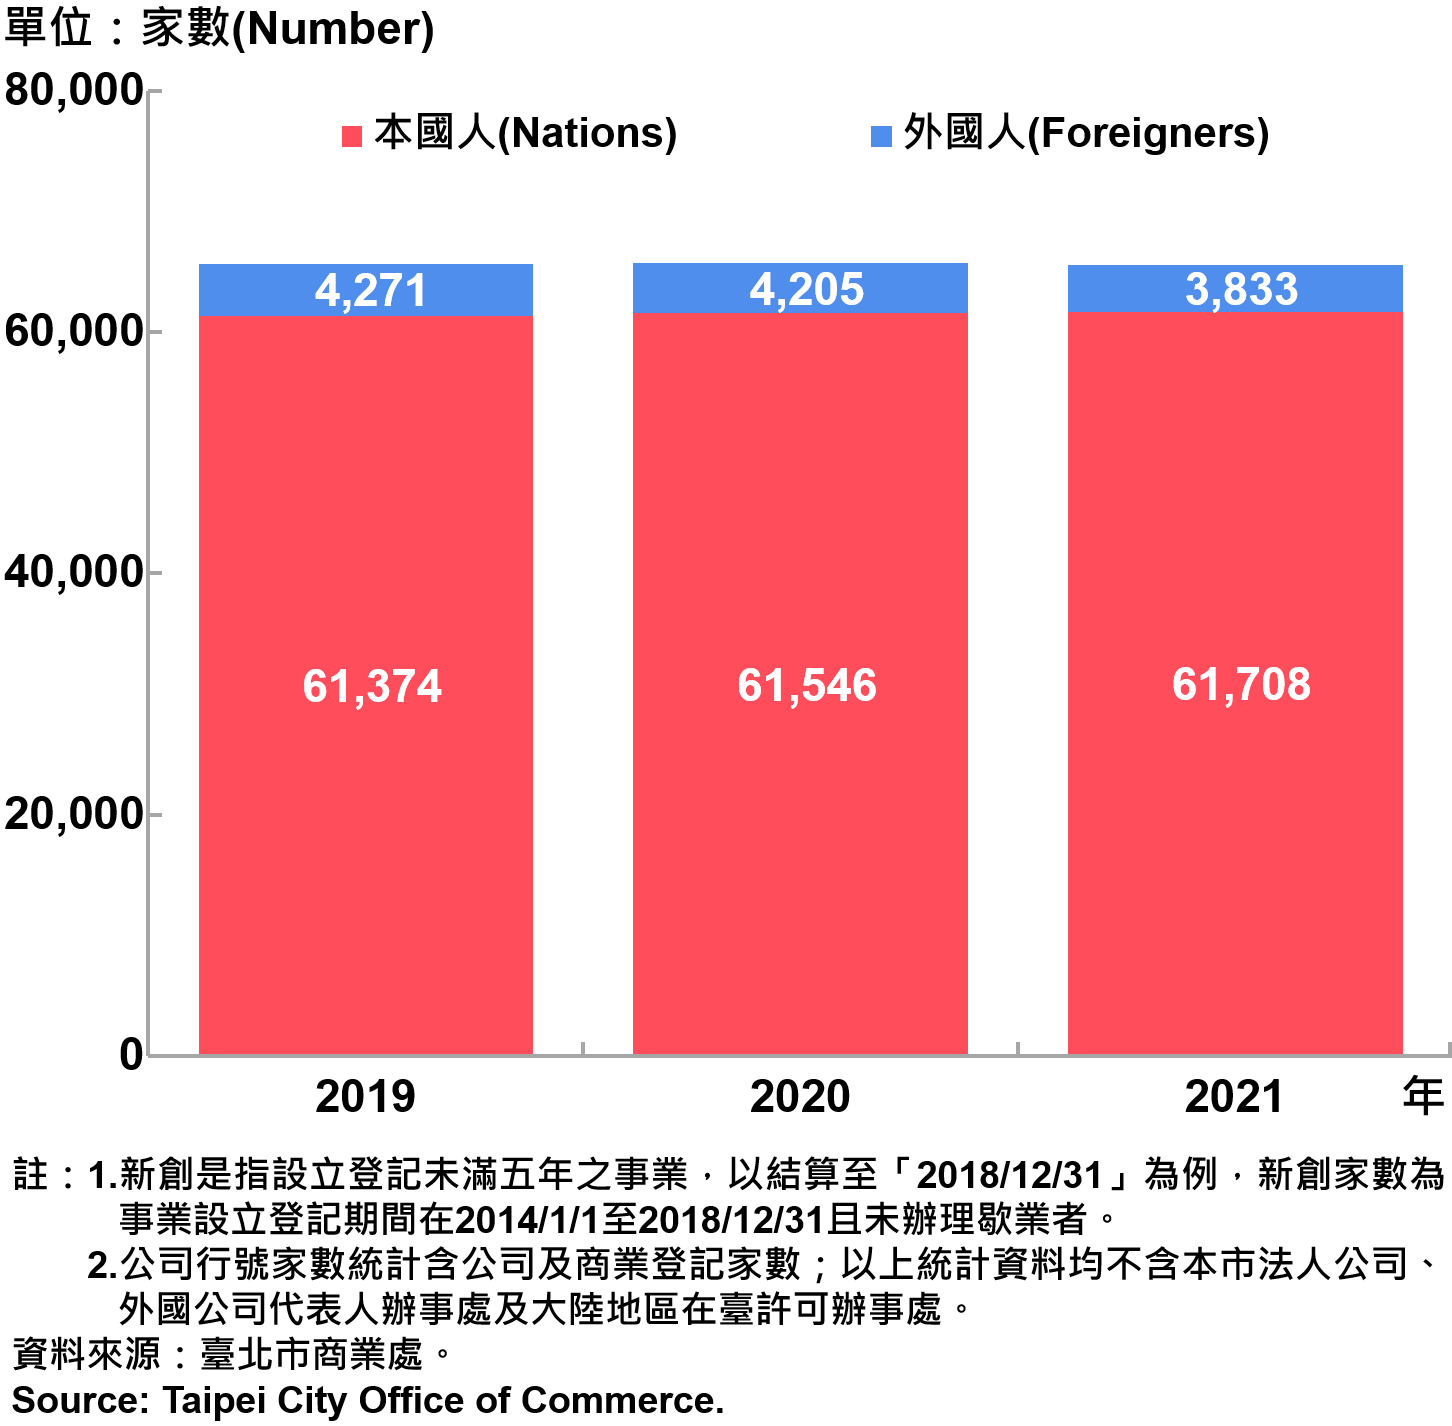 臺北市新創公司負責人-本國人與外國人分布情形-現存家數—2021 Responsible Person of Newly Registered Companies In Taipei City by Nationality - Number of Current—2021